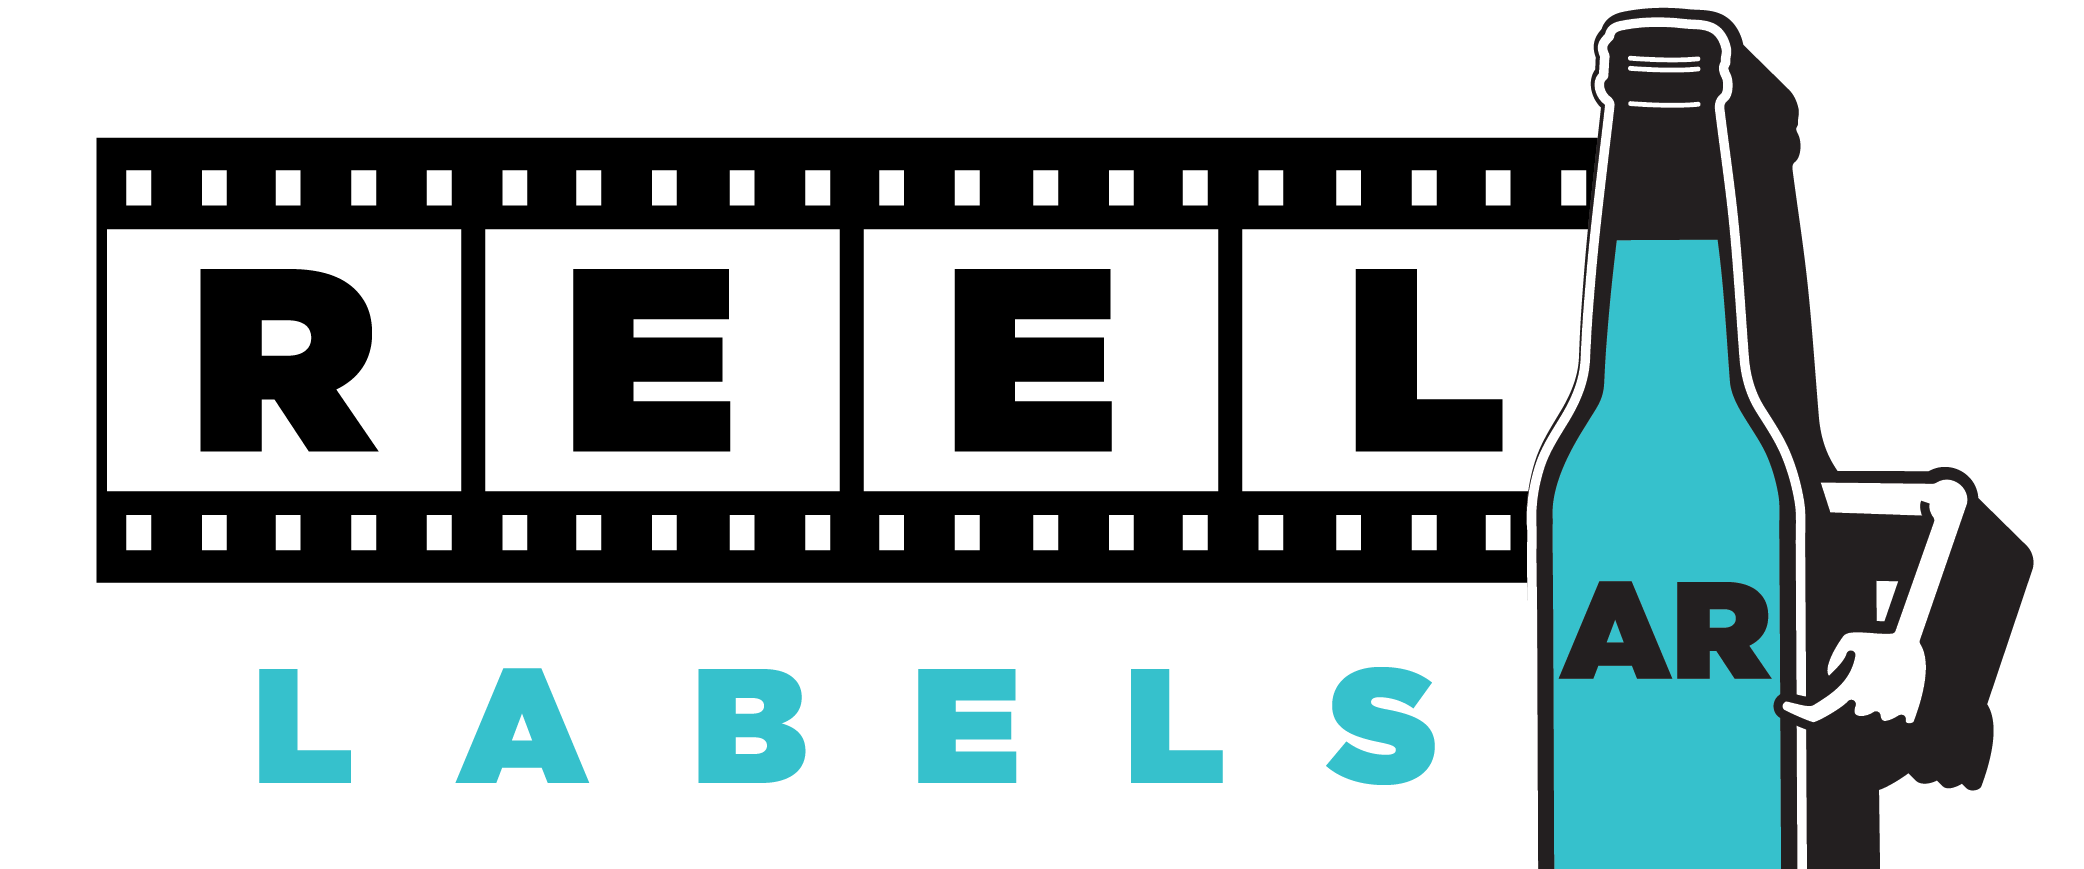 REEL LABELS logo